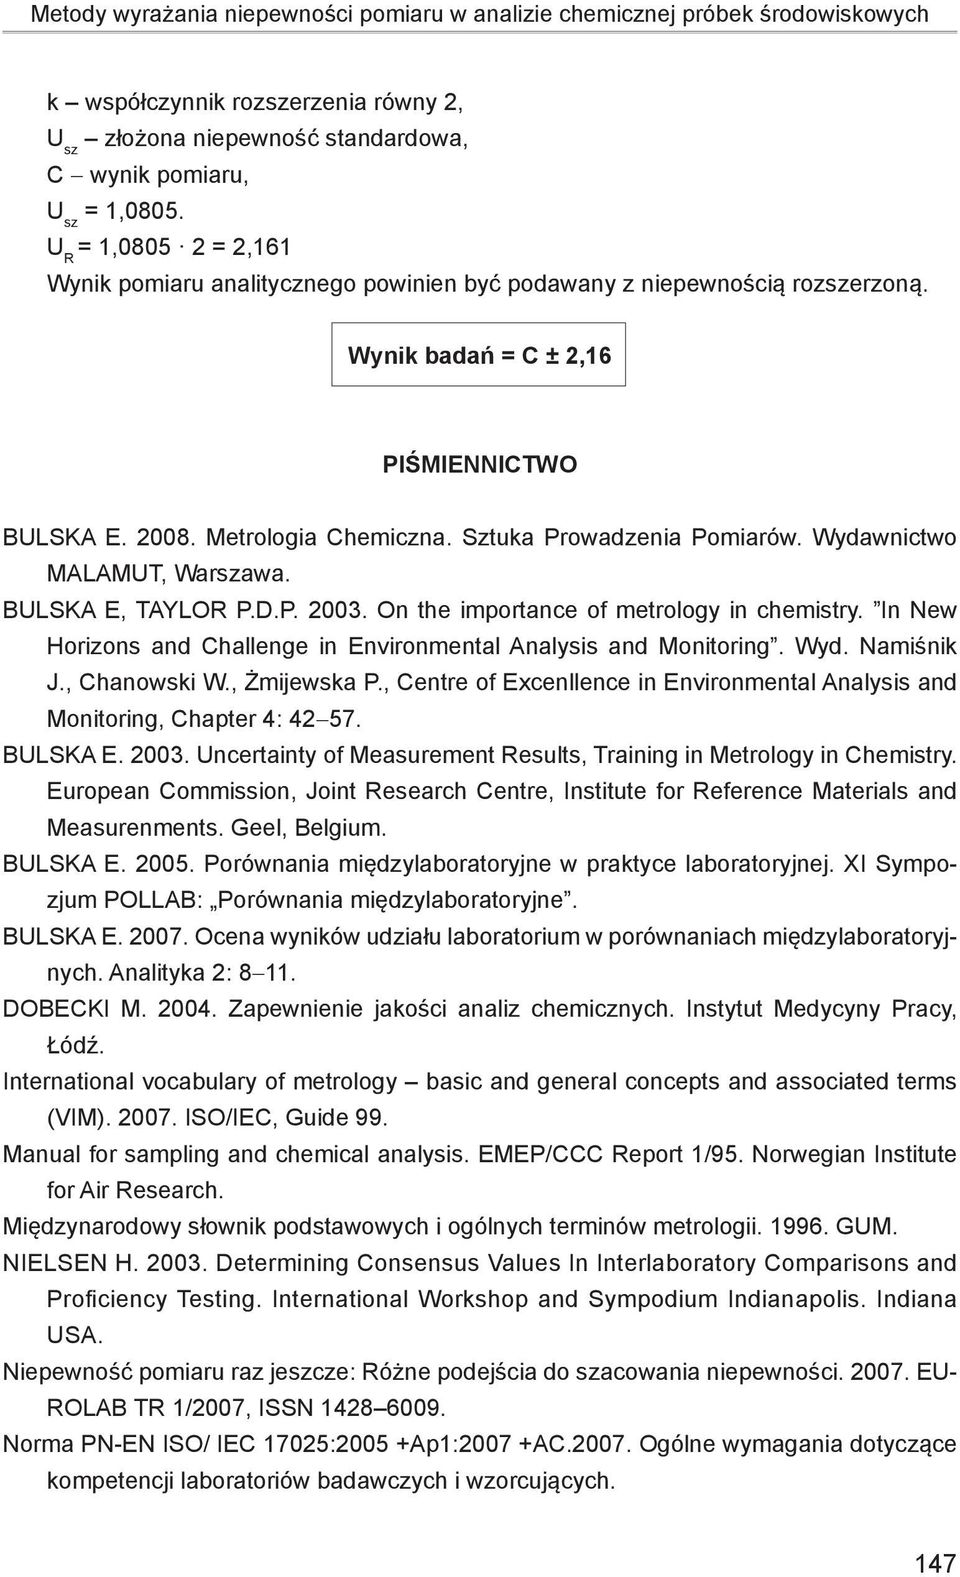 Sztuka Prowadzenia Pomiarów. Wydawnictwo MALAMUT, Warszawa. Bulska E, Taylor P.D.P. 2003. On the importance of metrology in chemistry.